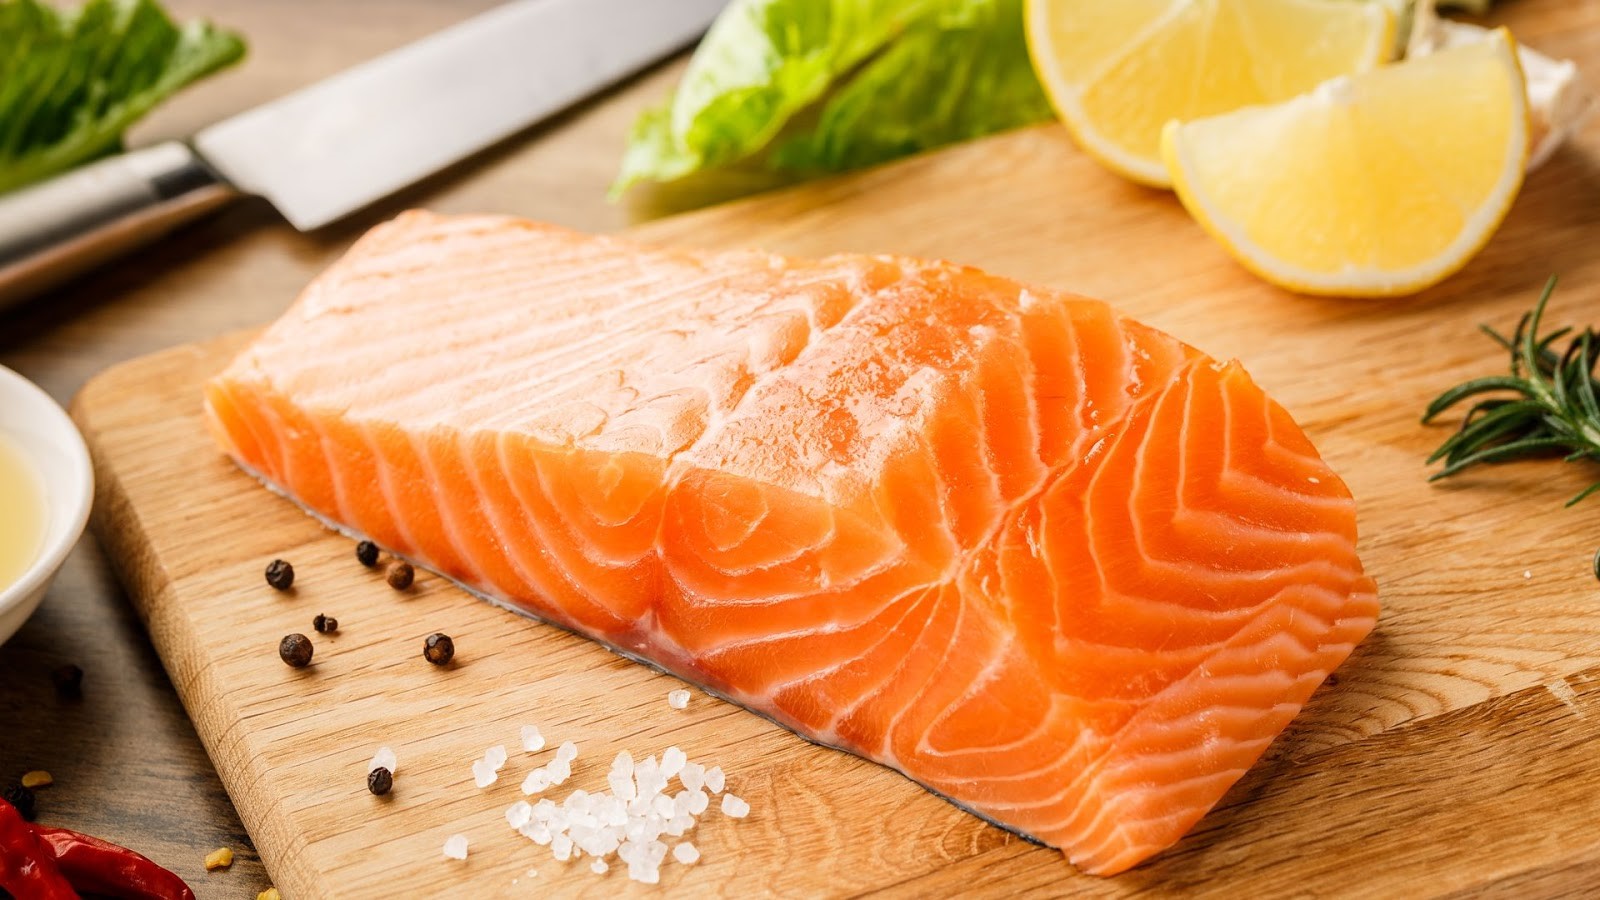 Axit béo omega-3 có tác dụng giảm các triệu chứng viêm